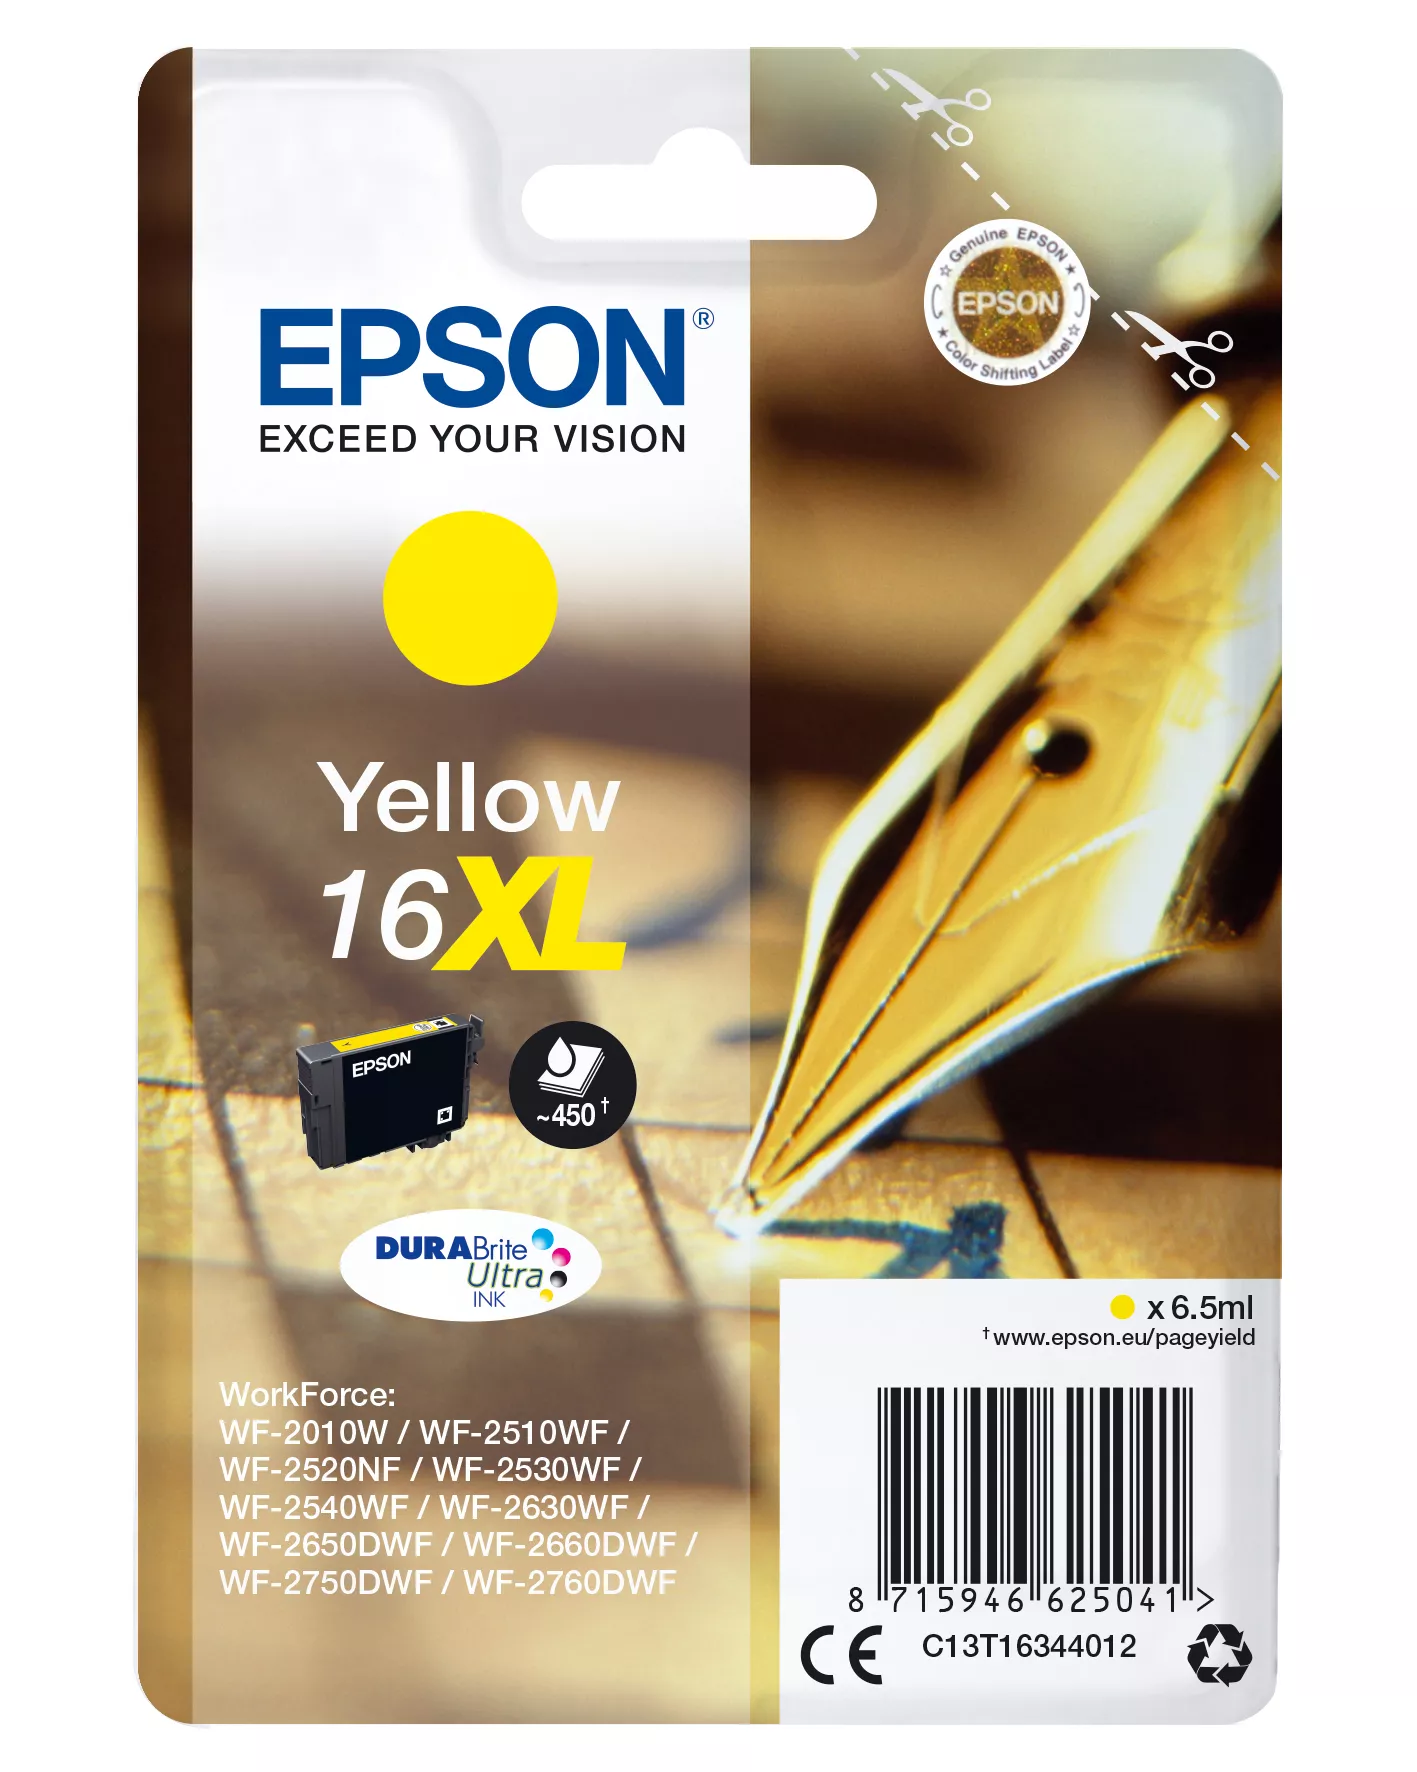 Vente EPSON 16XL cartouche dencre jaune haute capacité 6.5ml au meilleur prix